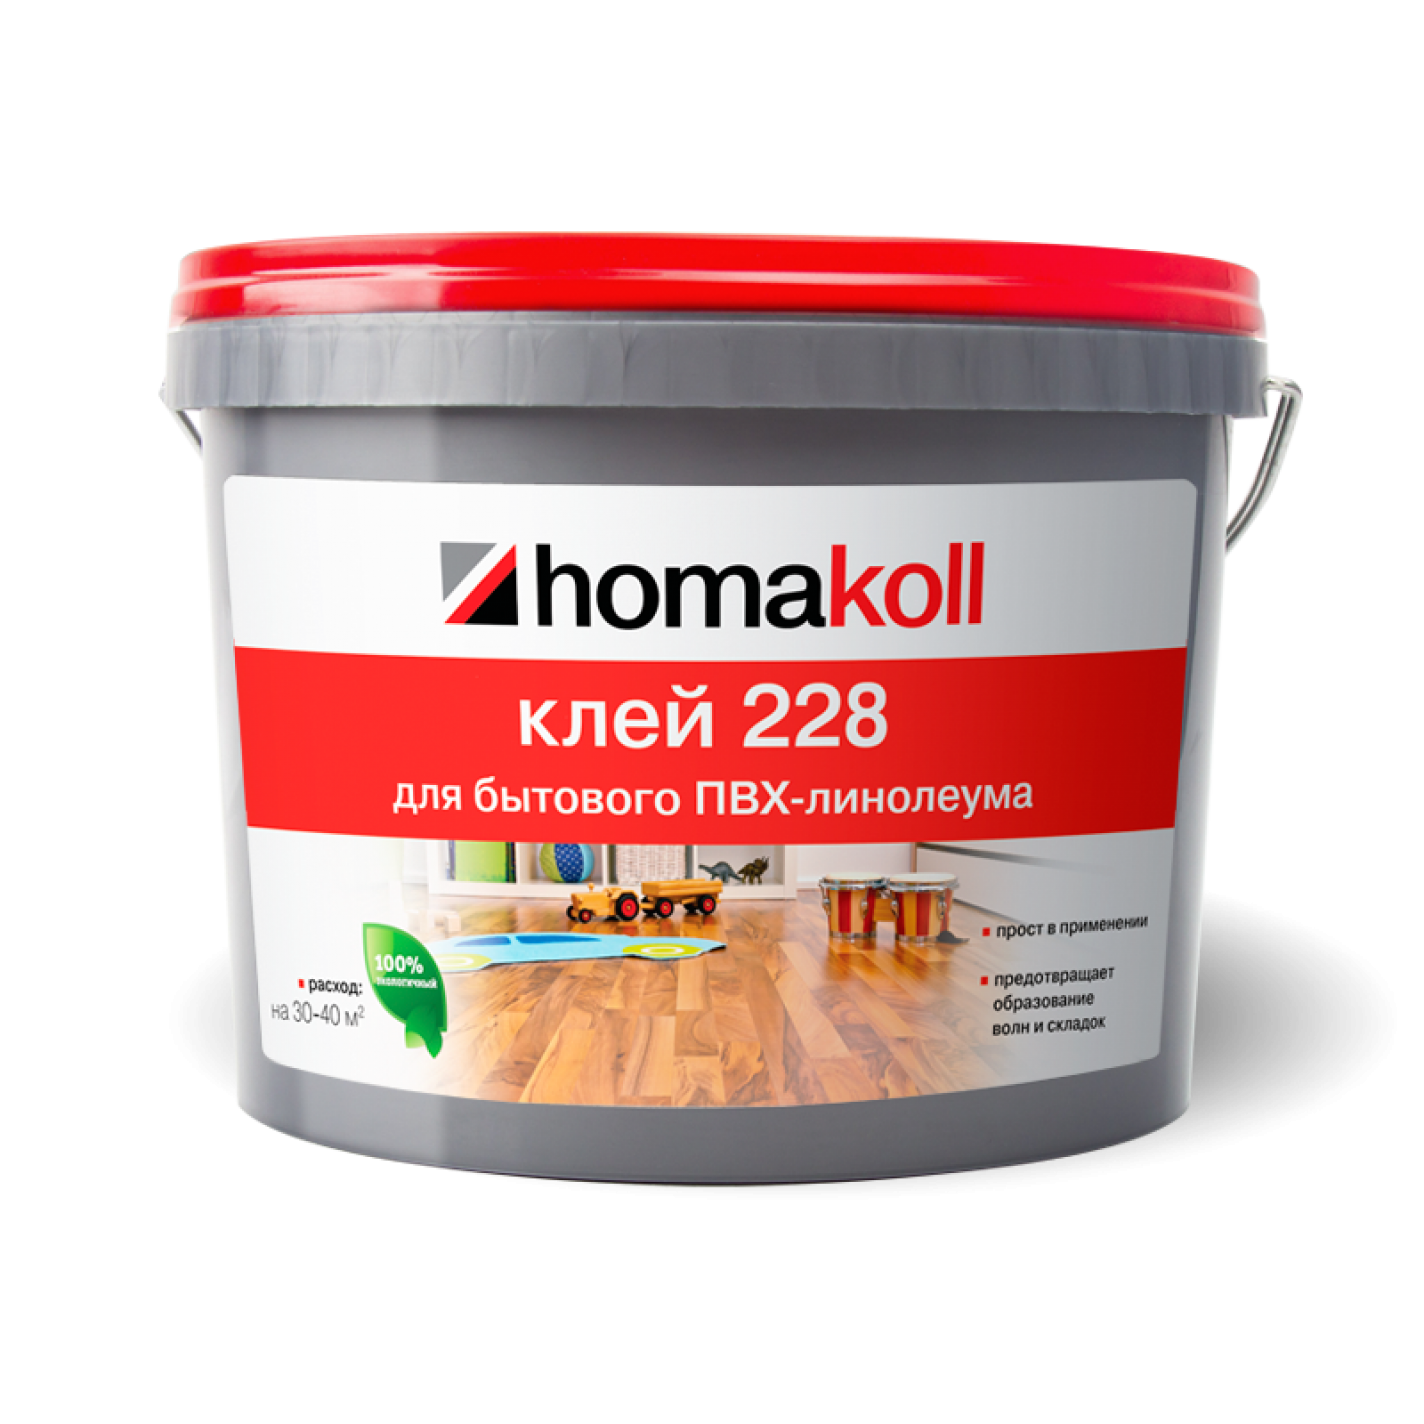 Клей homakoll 228 (14 кг)